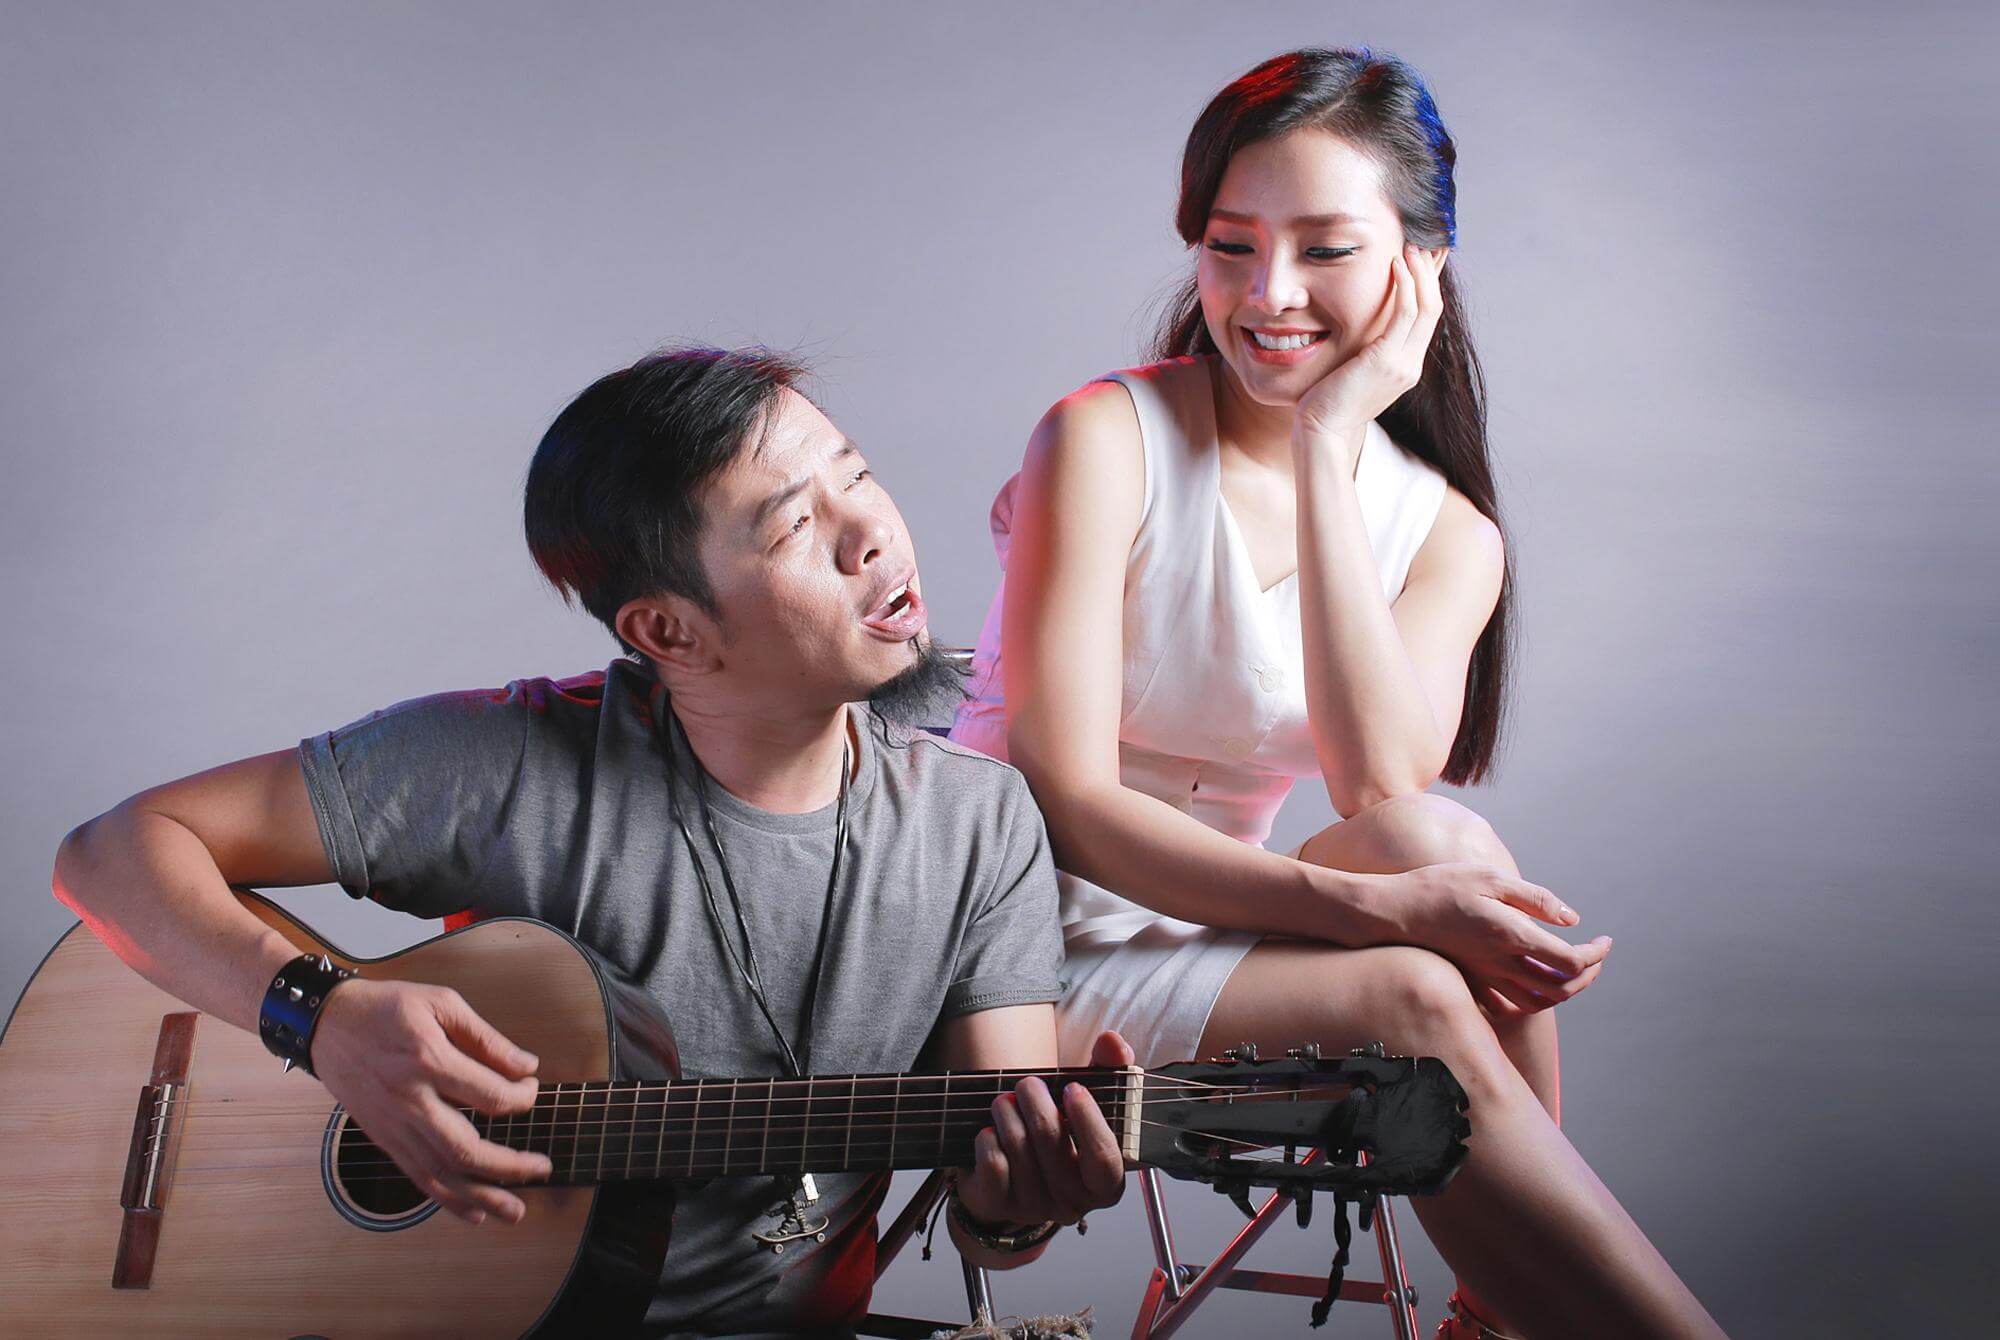 Màn "cua gái" của Thái Hoà khiến khán giả không thể nhịn cười (ảnh: internet)